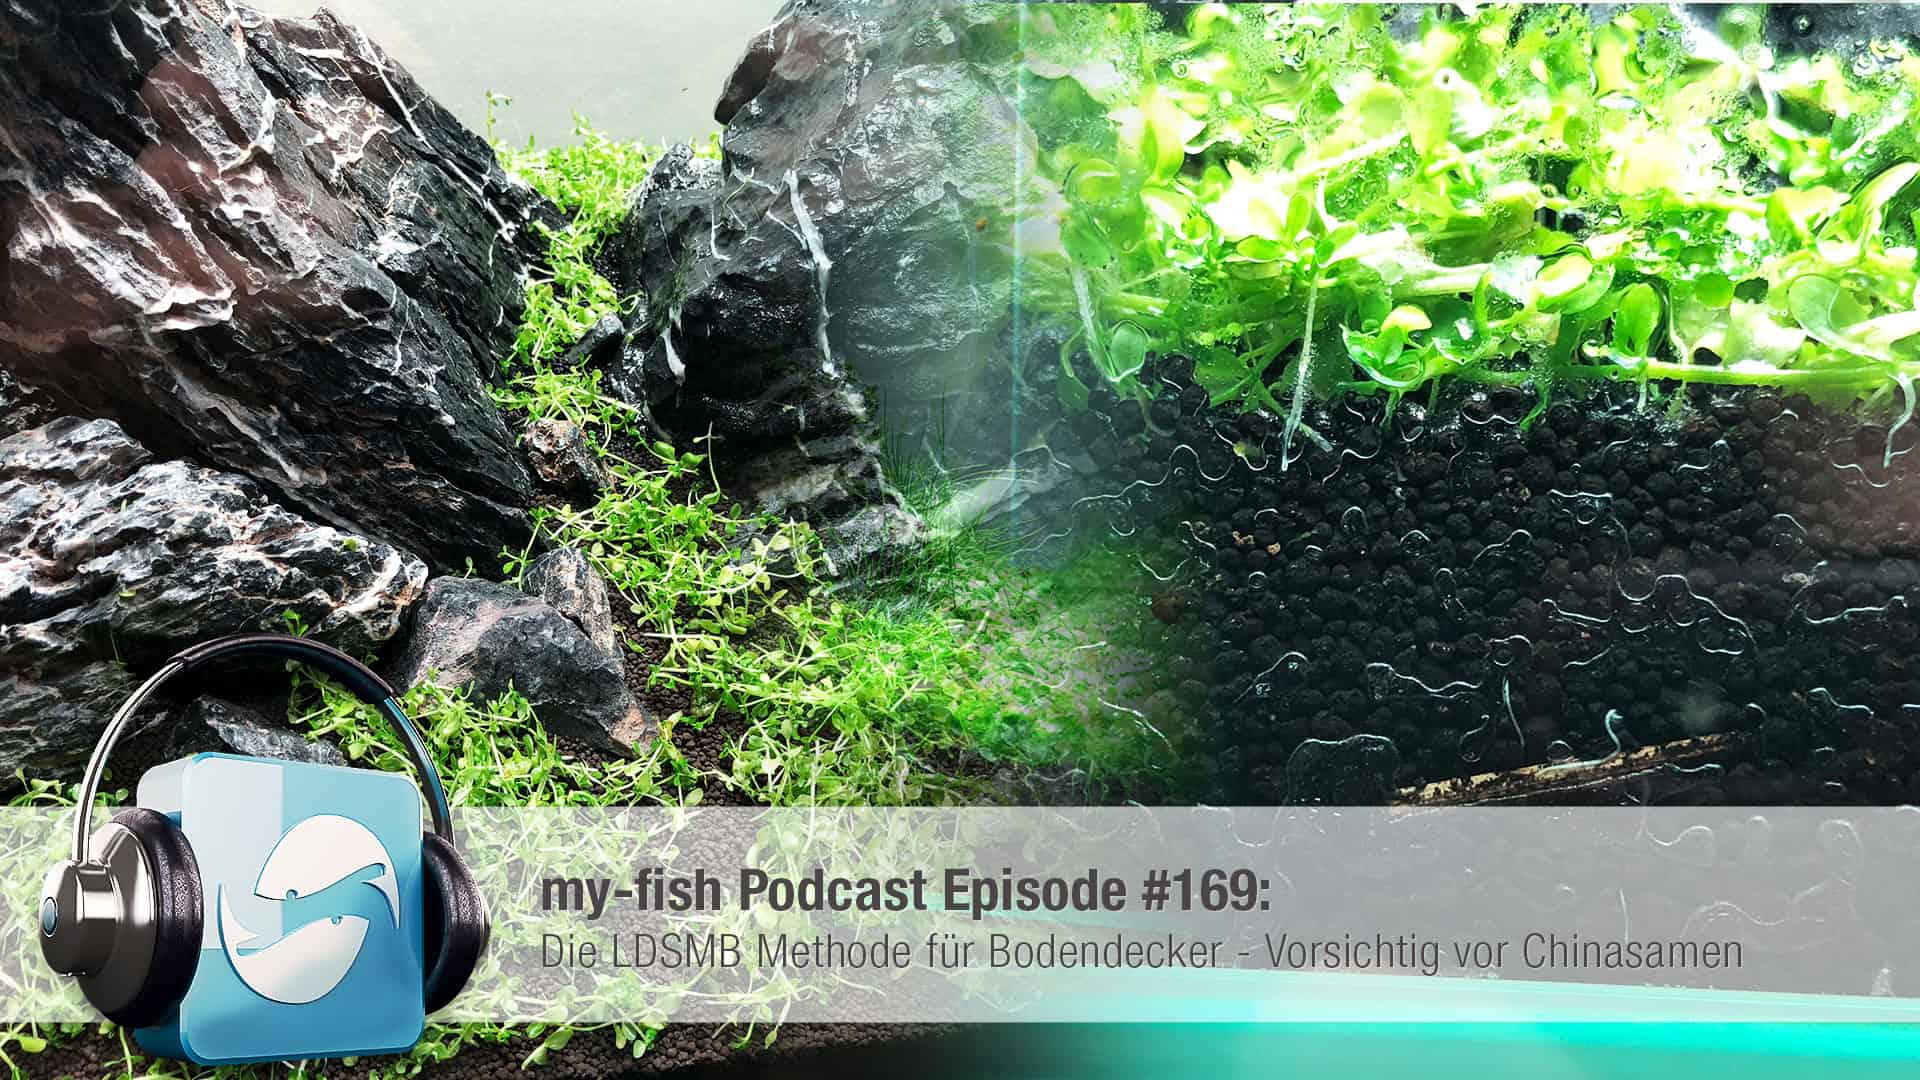 Podcast Episode #169: Die LDSMB Methode für Bodendecker - Vorsichtig vor Chinasamen